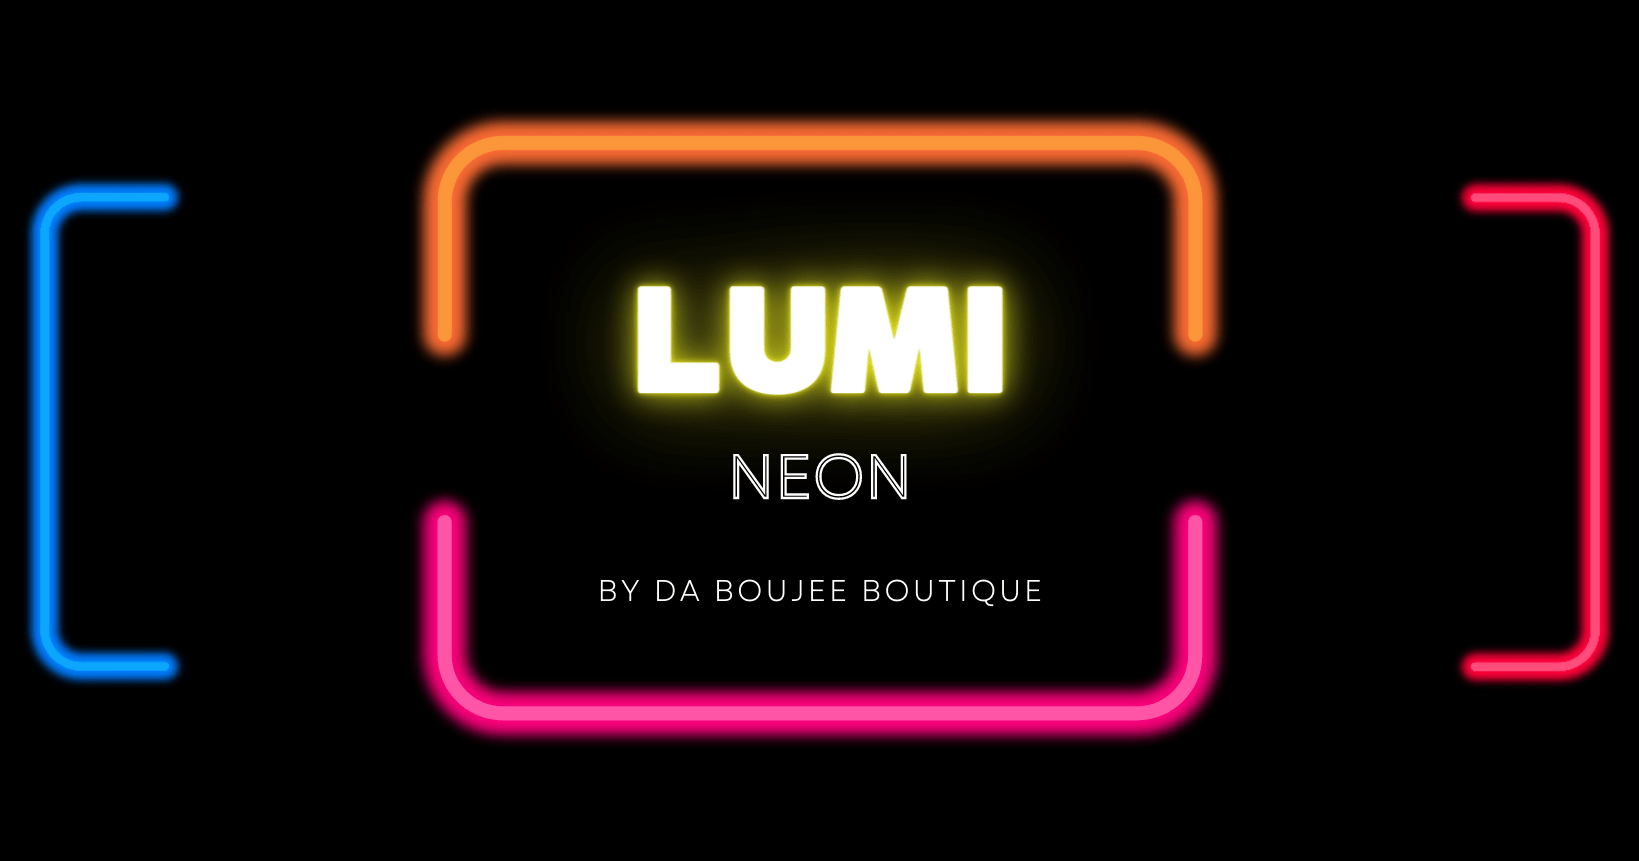 Lumi Neon – Illuminate Your Life